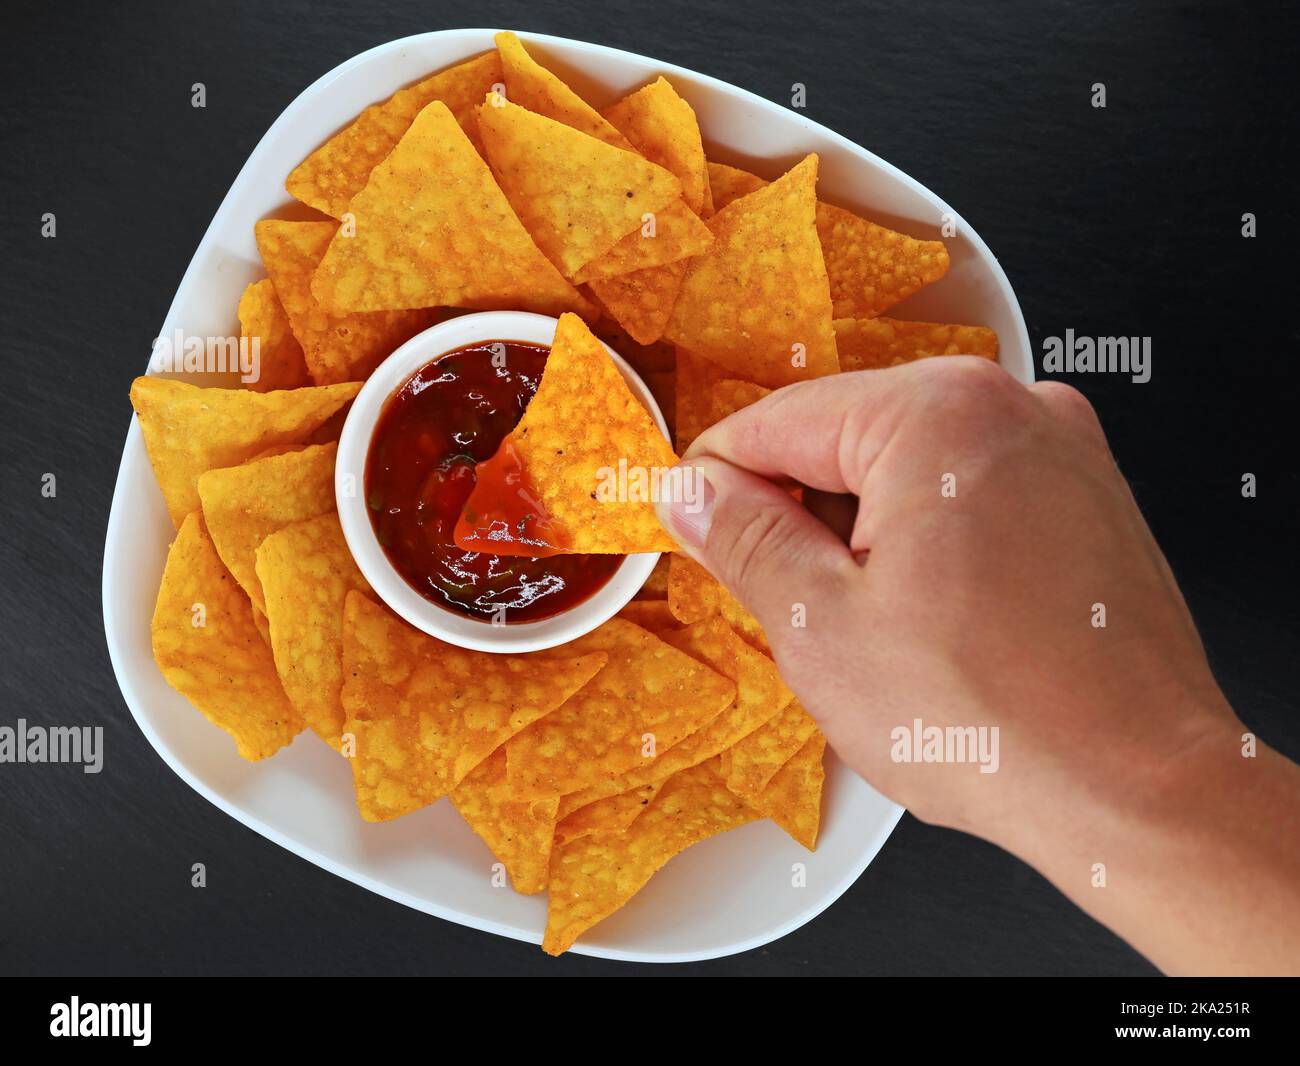 Männliche Hand taucht einen mexikanischen Maischip oder Tortilla Chip in einen würzigen Salsa Dip, Draufsicht auf eine Schüssel mit Tortillas mit Salsa auf schwarzem Schiefer Hintergrund Stockfoto